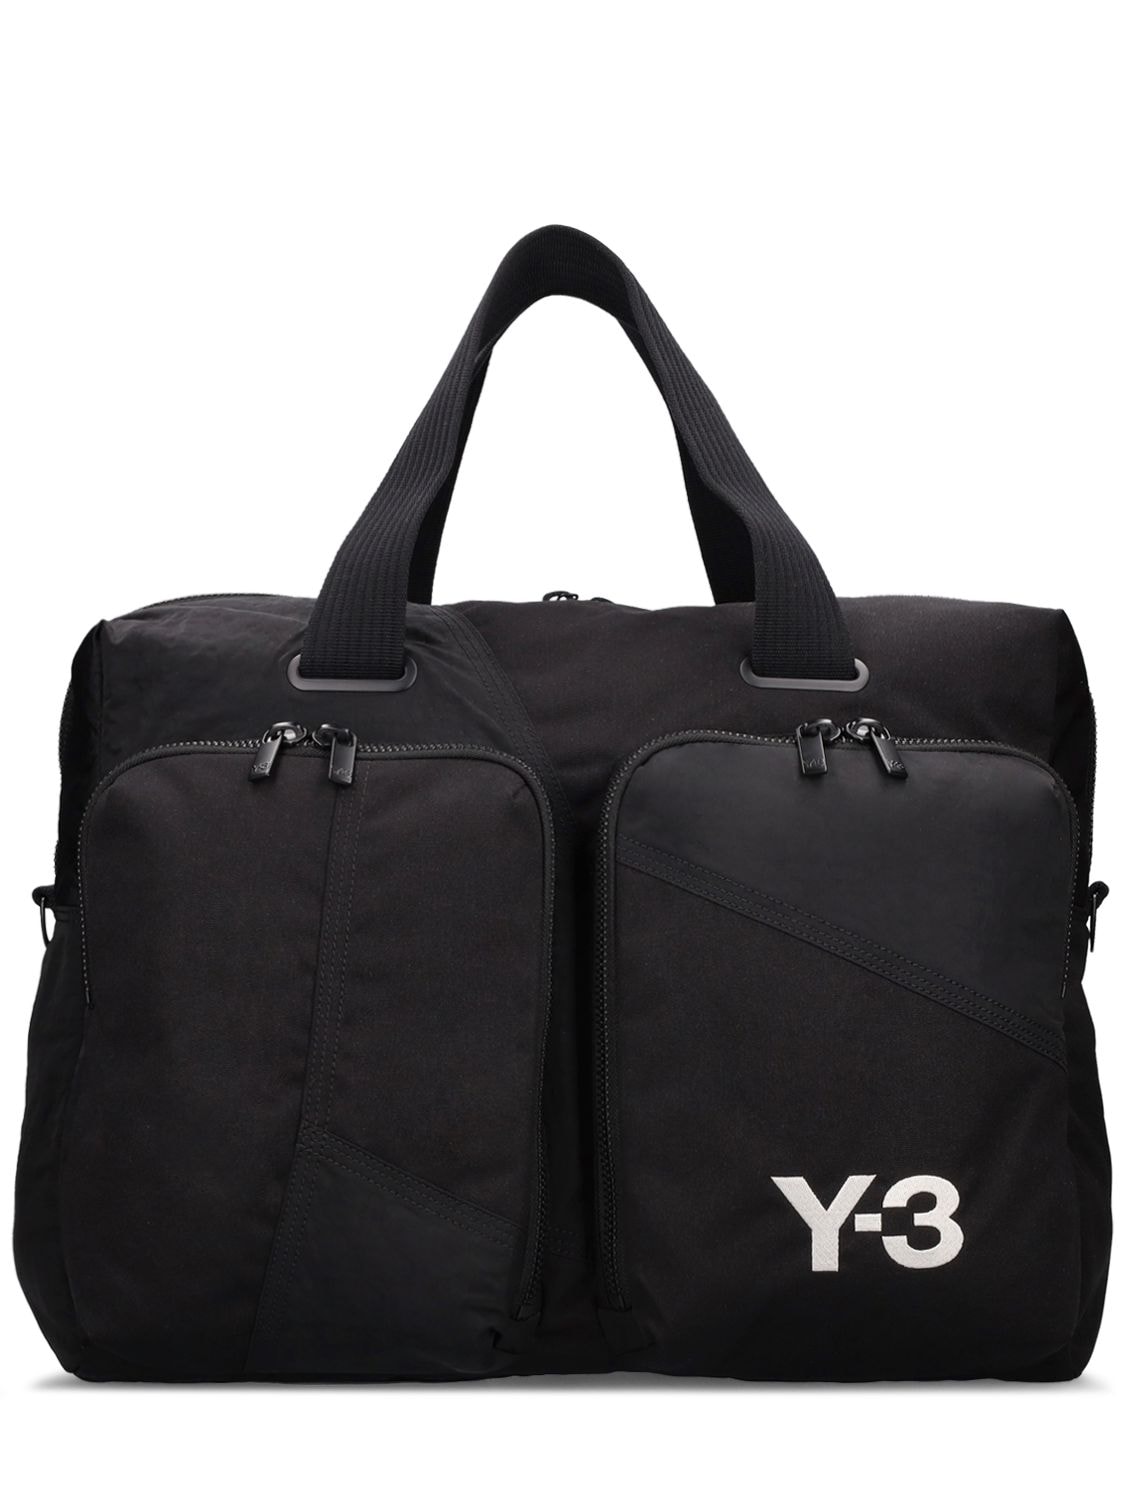 Y-3 Holldall Bag